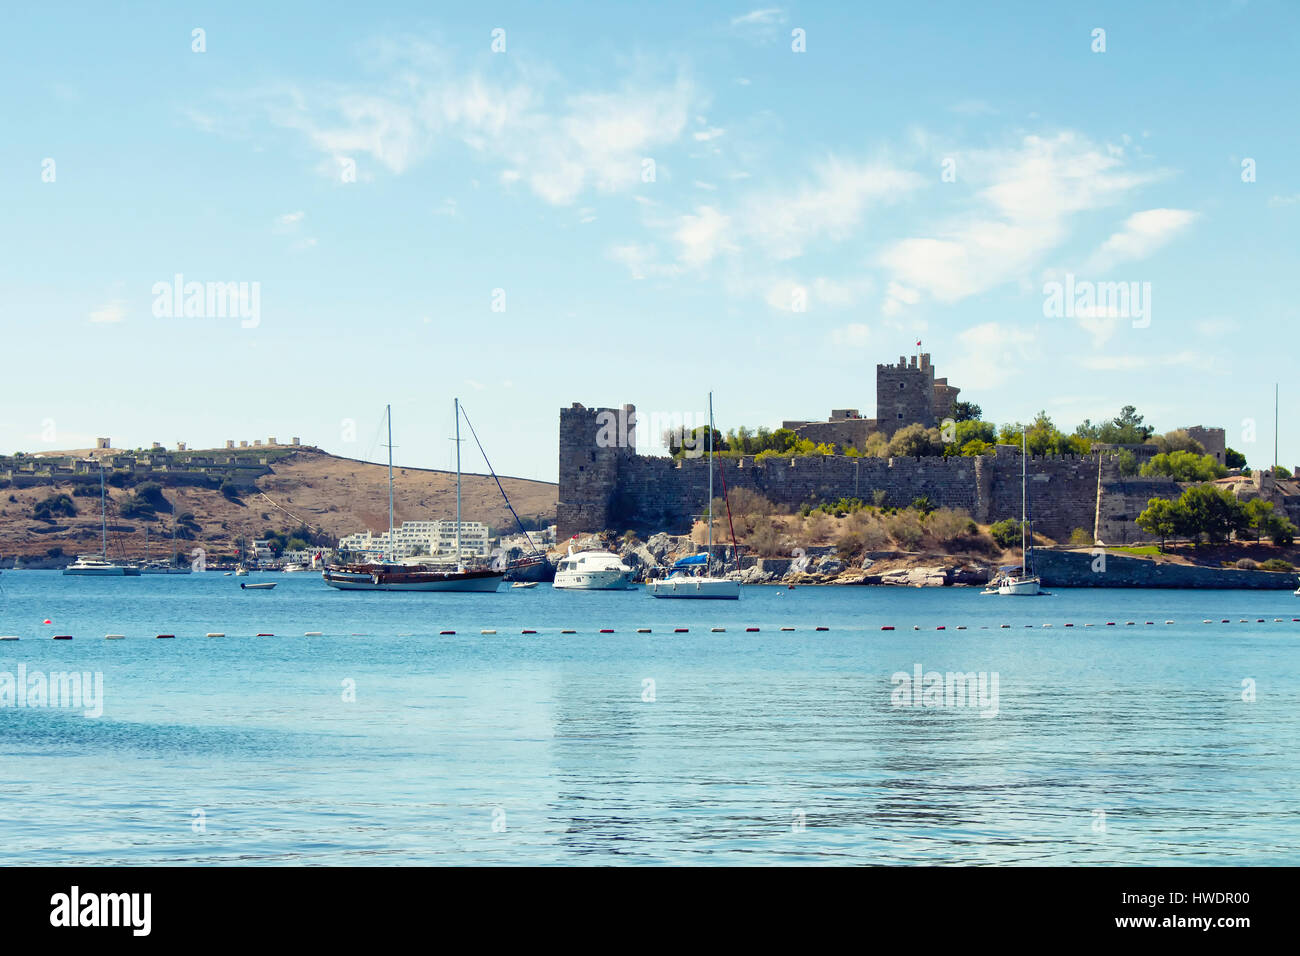 Yates de lujo (barcos de vela), estacionado en el agua color turquesa en frente del Castillo de Bodrum. La imagen muestra la cultura del mar Egeo y del Mediterráneo coastel lifesty Foto de stock